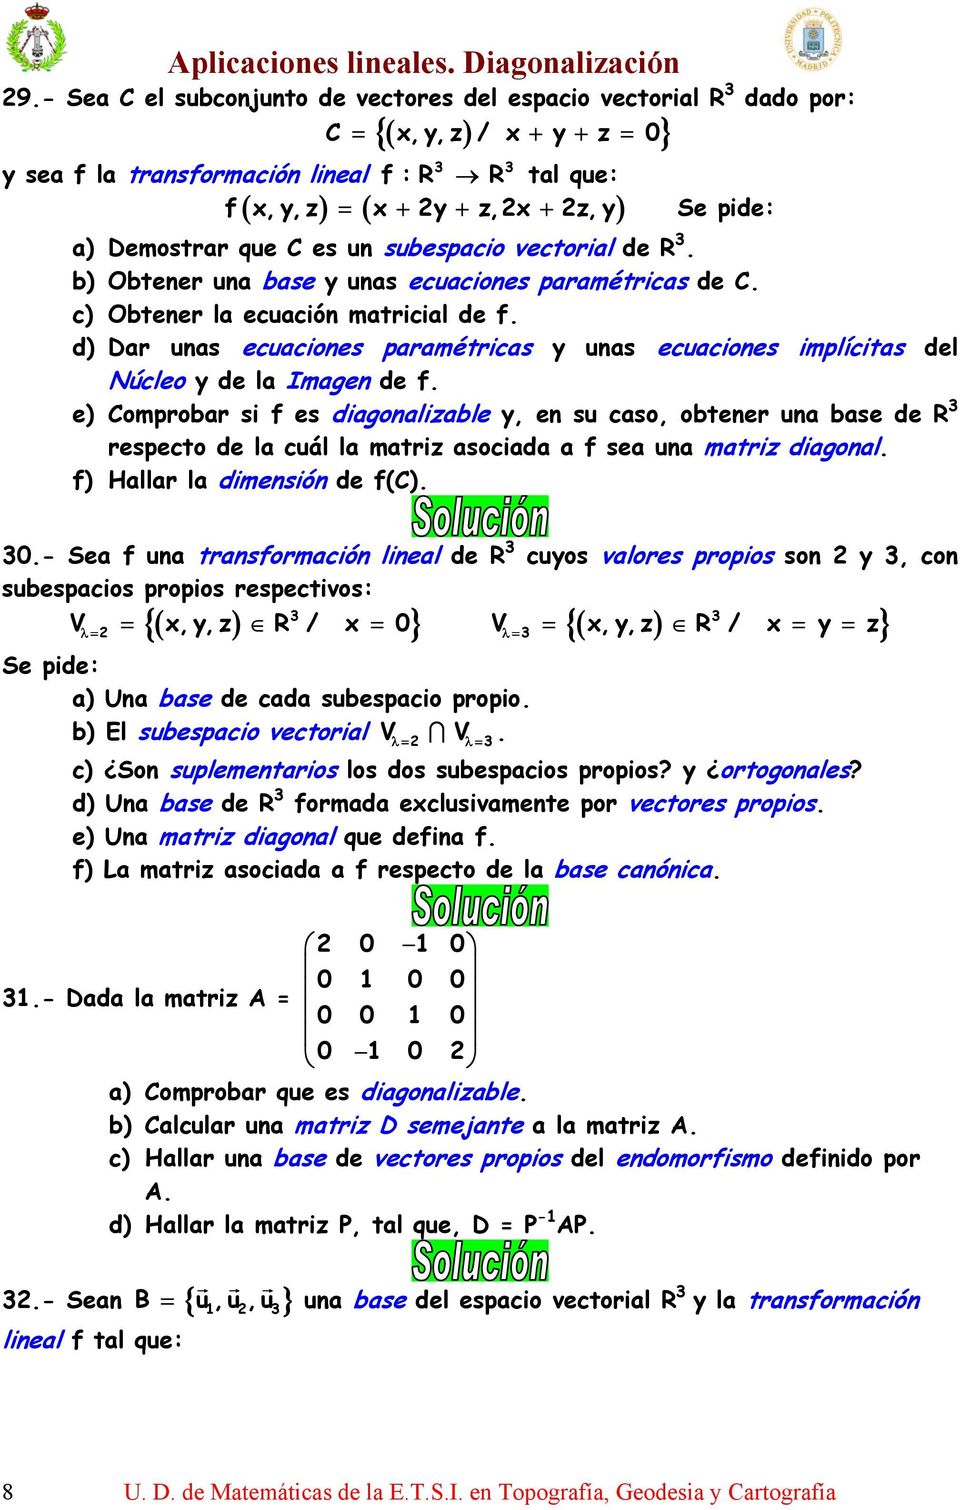 d) Dar unas ecuaciones paramétricas y unas ecuaciones implícitas del Núcleo y de la Imagen de f.